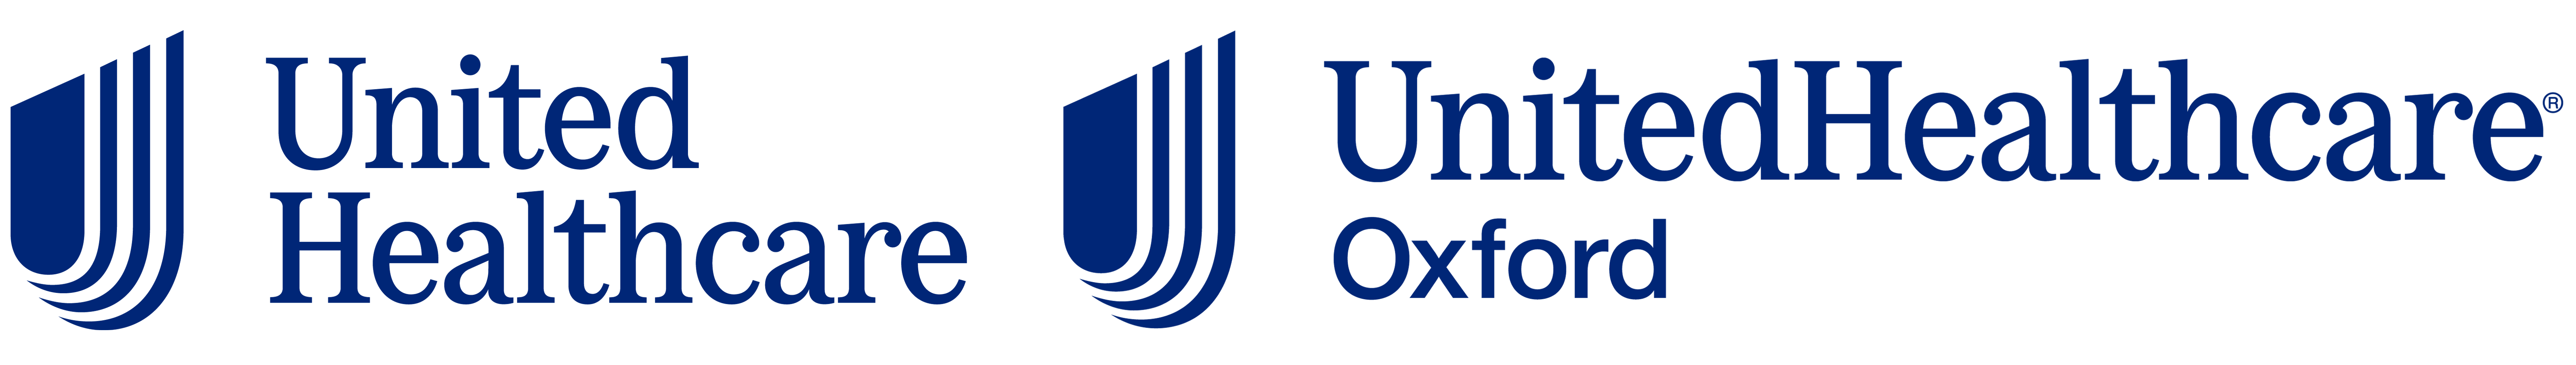 UHC_Logos